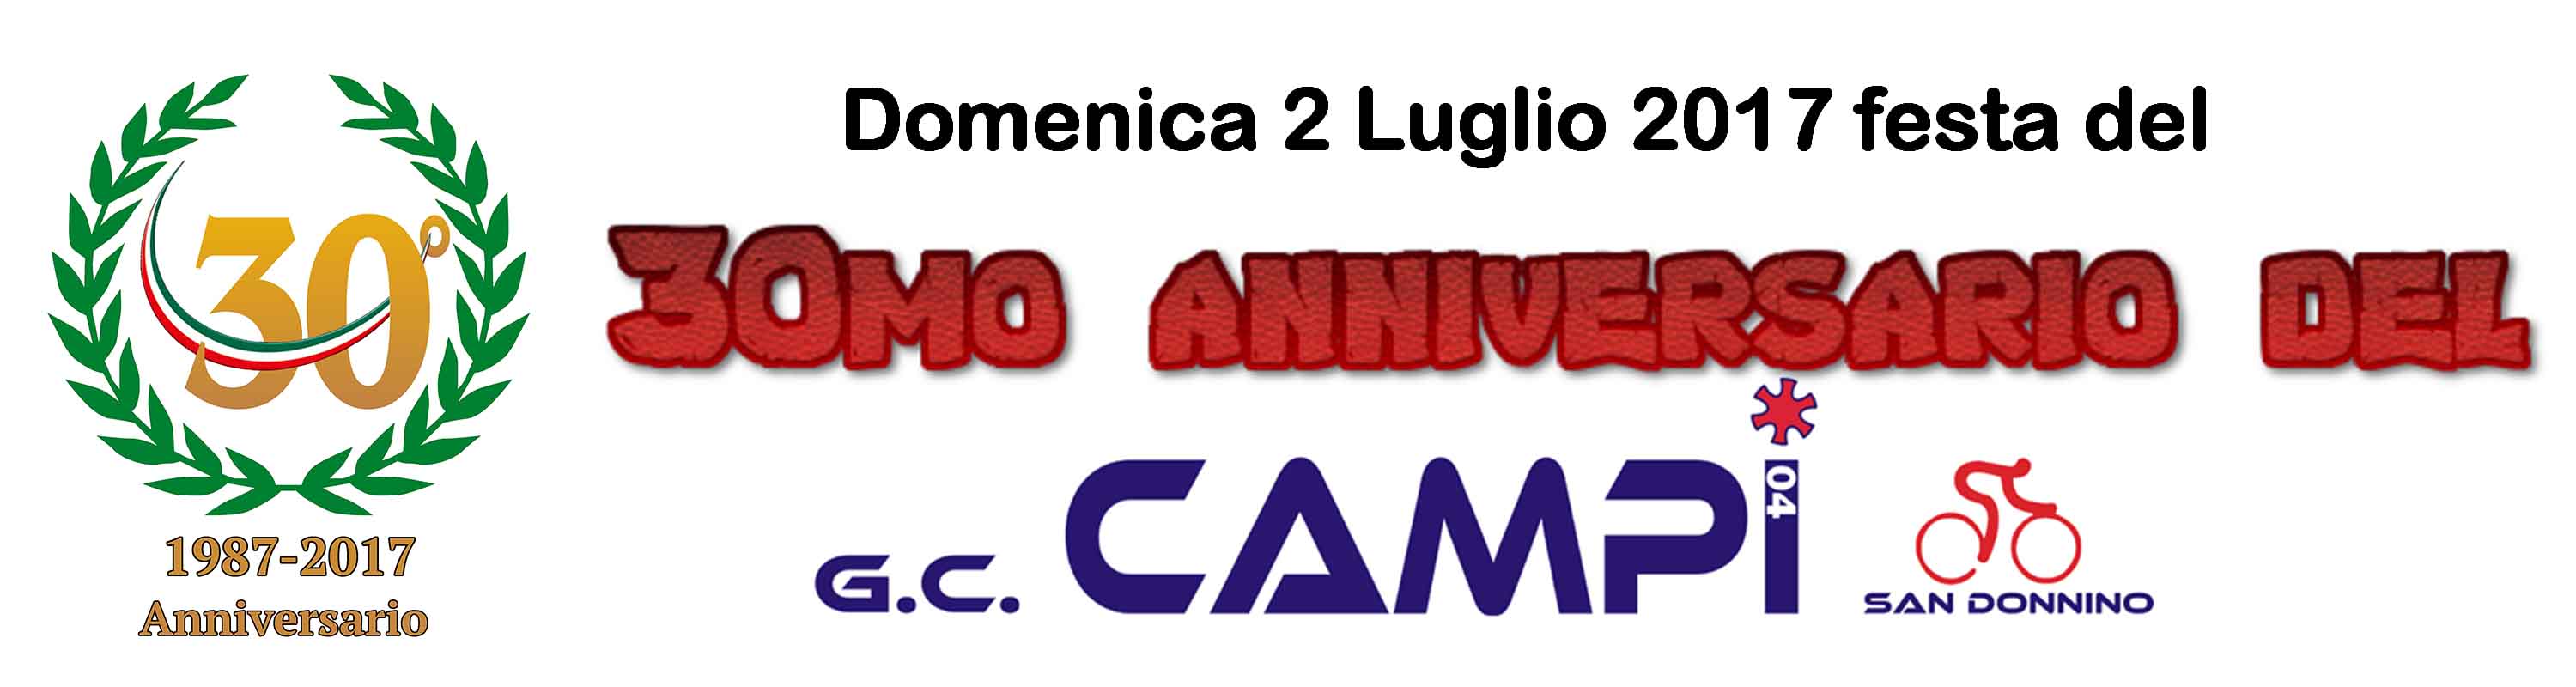 170526_30mo_Anniversario CAMPI04